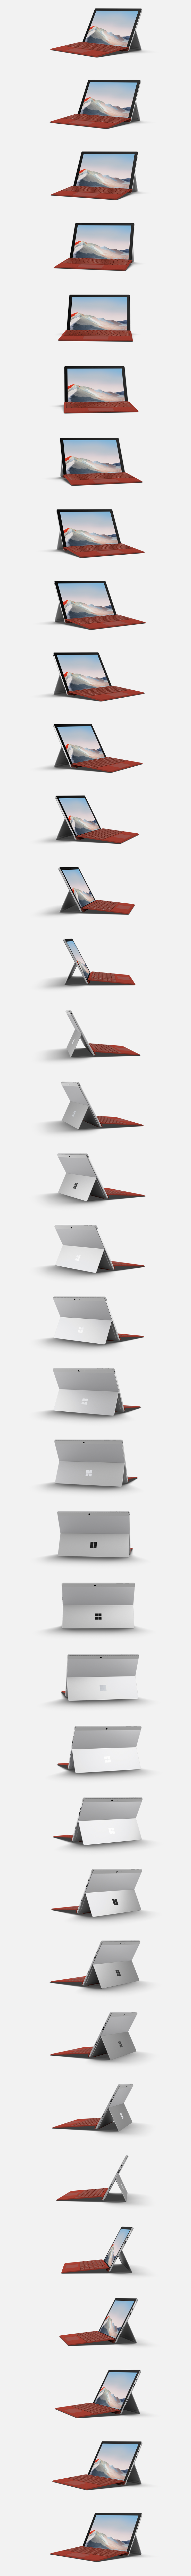 法人向け Surface Pro 7+。